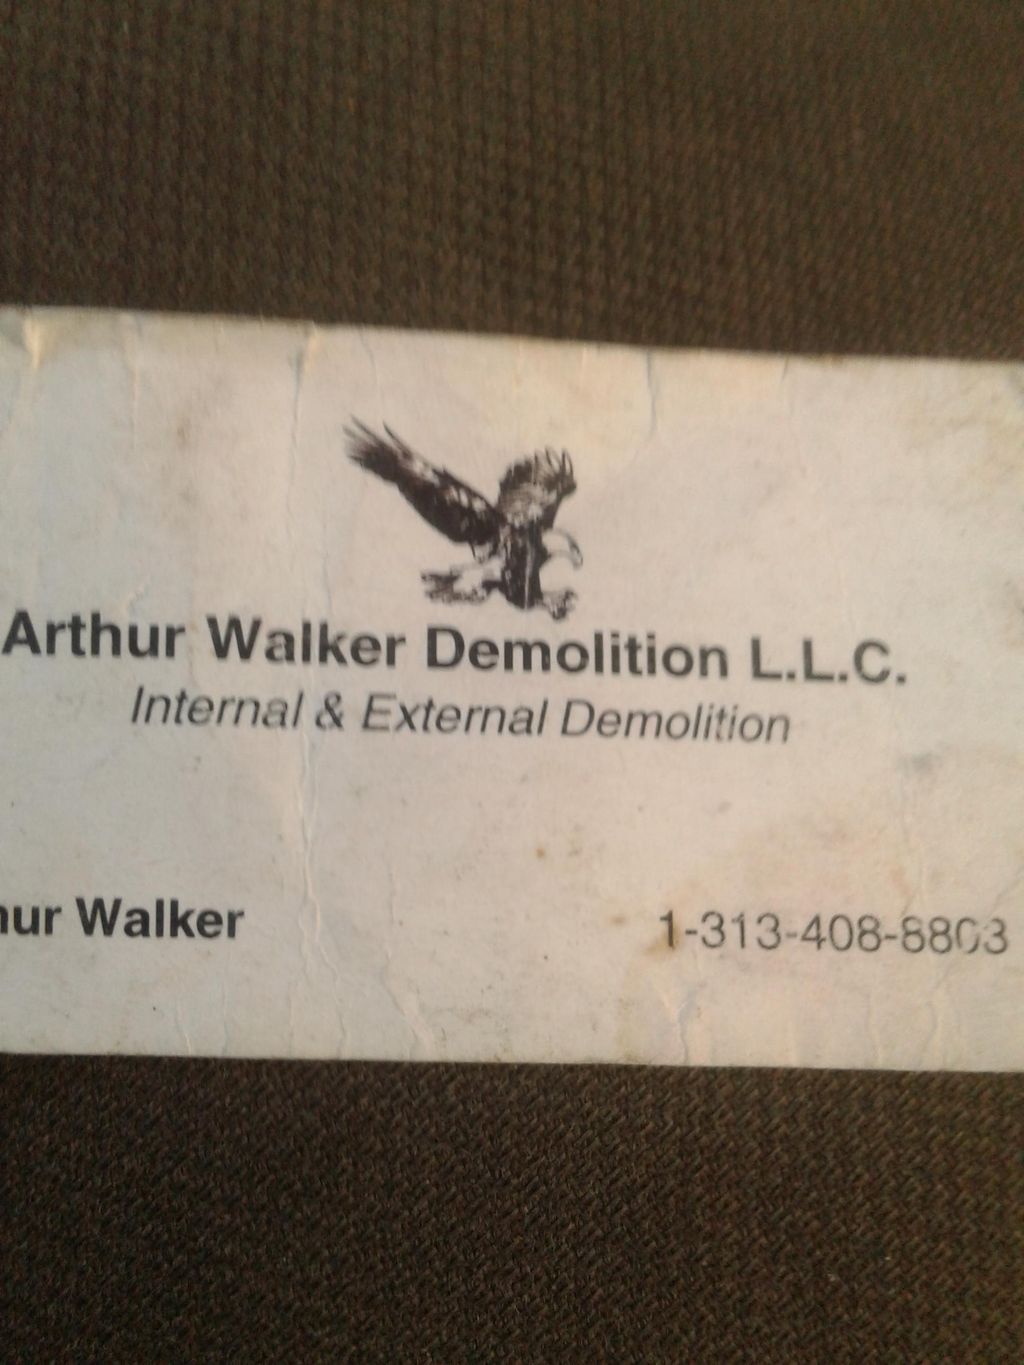 Arthur Walker Demolition LLC.3l34088803